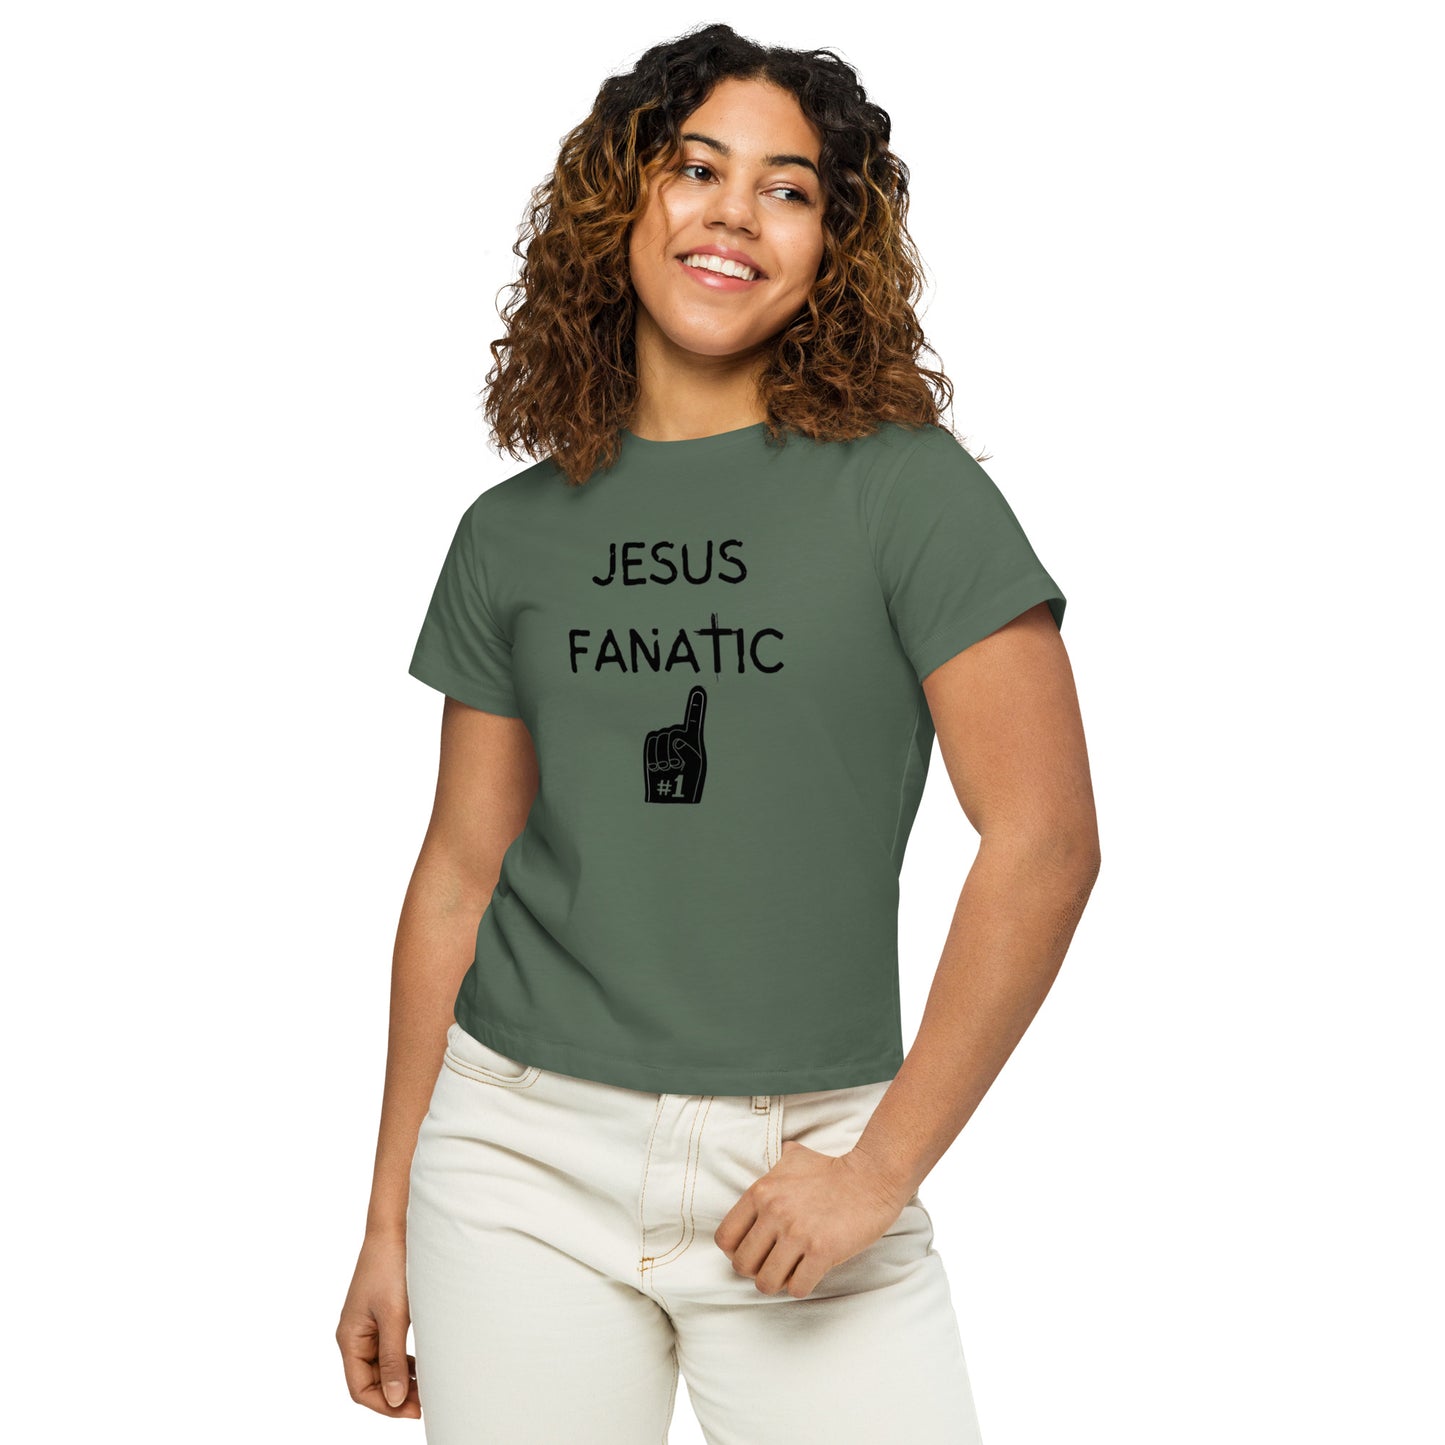 Women’s high-waisted t-shirt